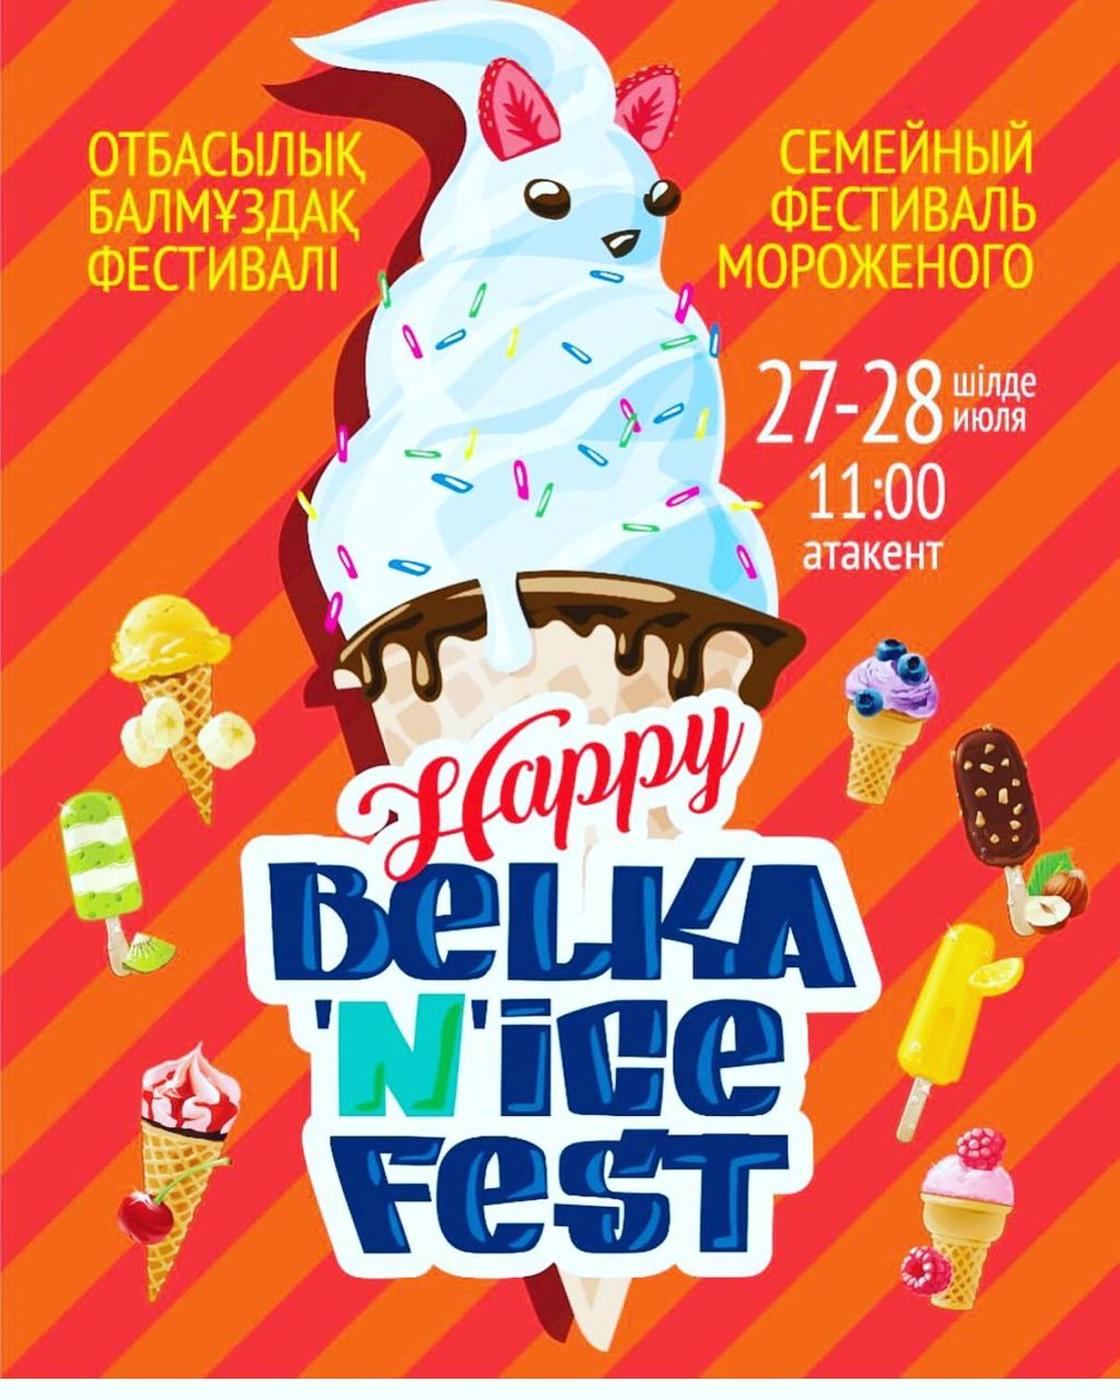 Фестиваль мороженого «Belka Nice Fest» пройдет в Алматы